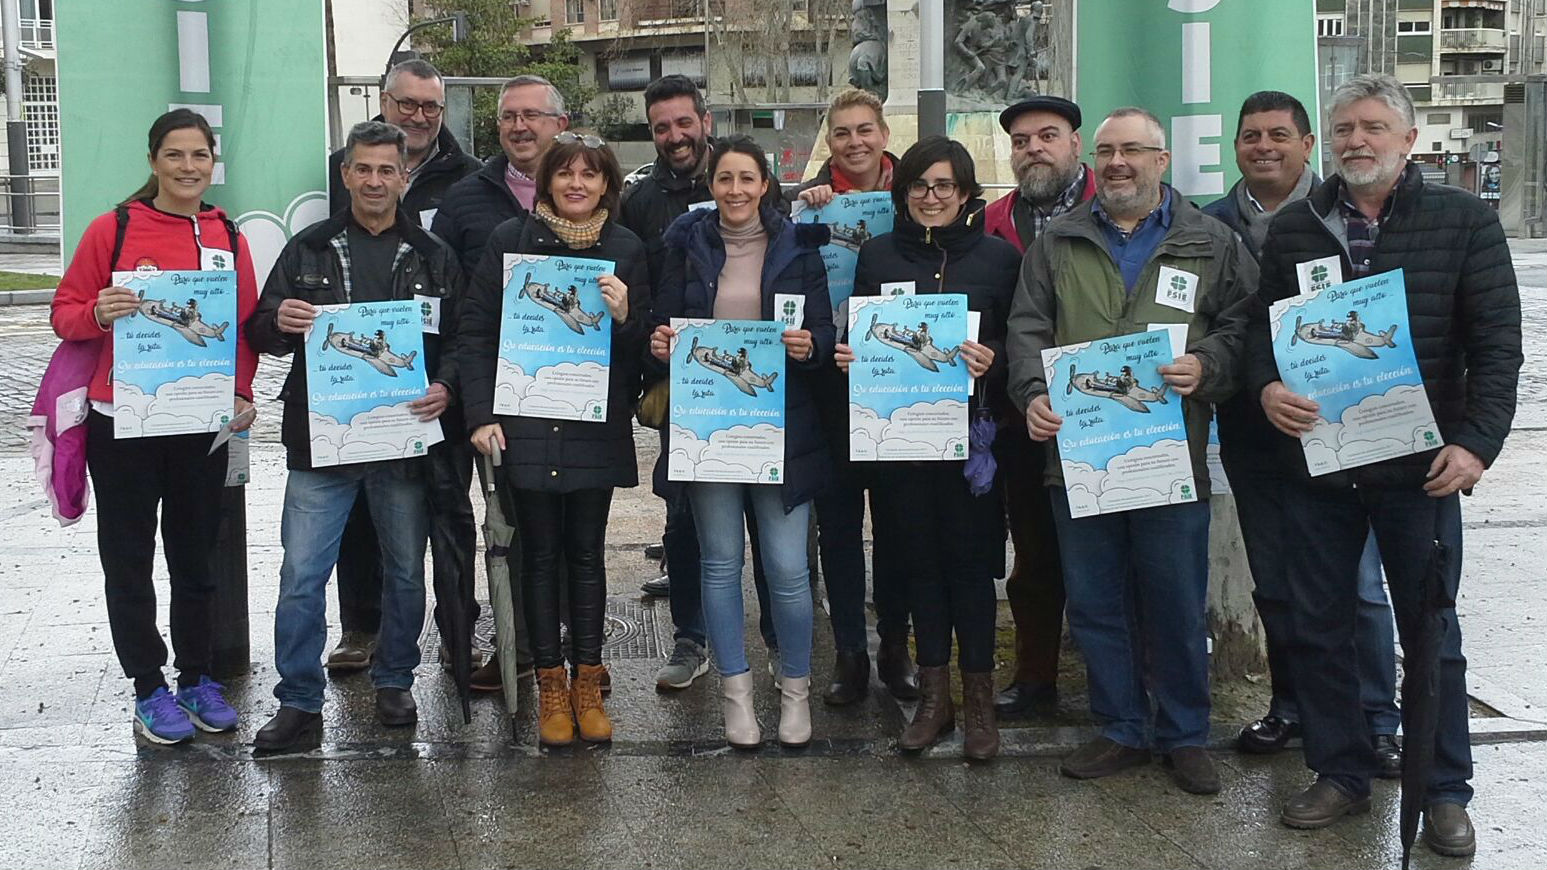 Representantes de la educación concertada durante un acto informativo en Jaén.